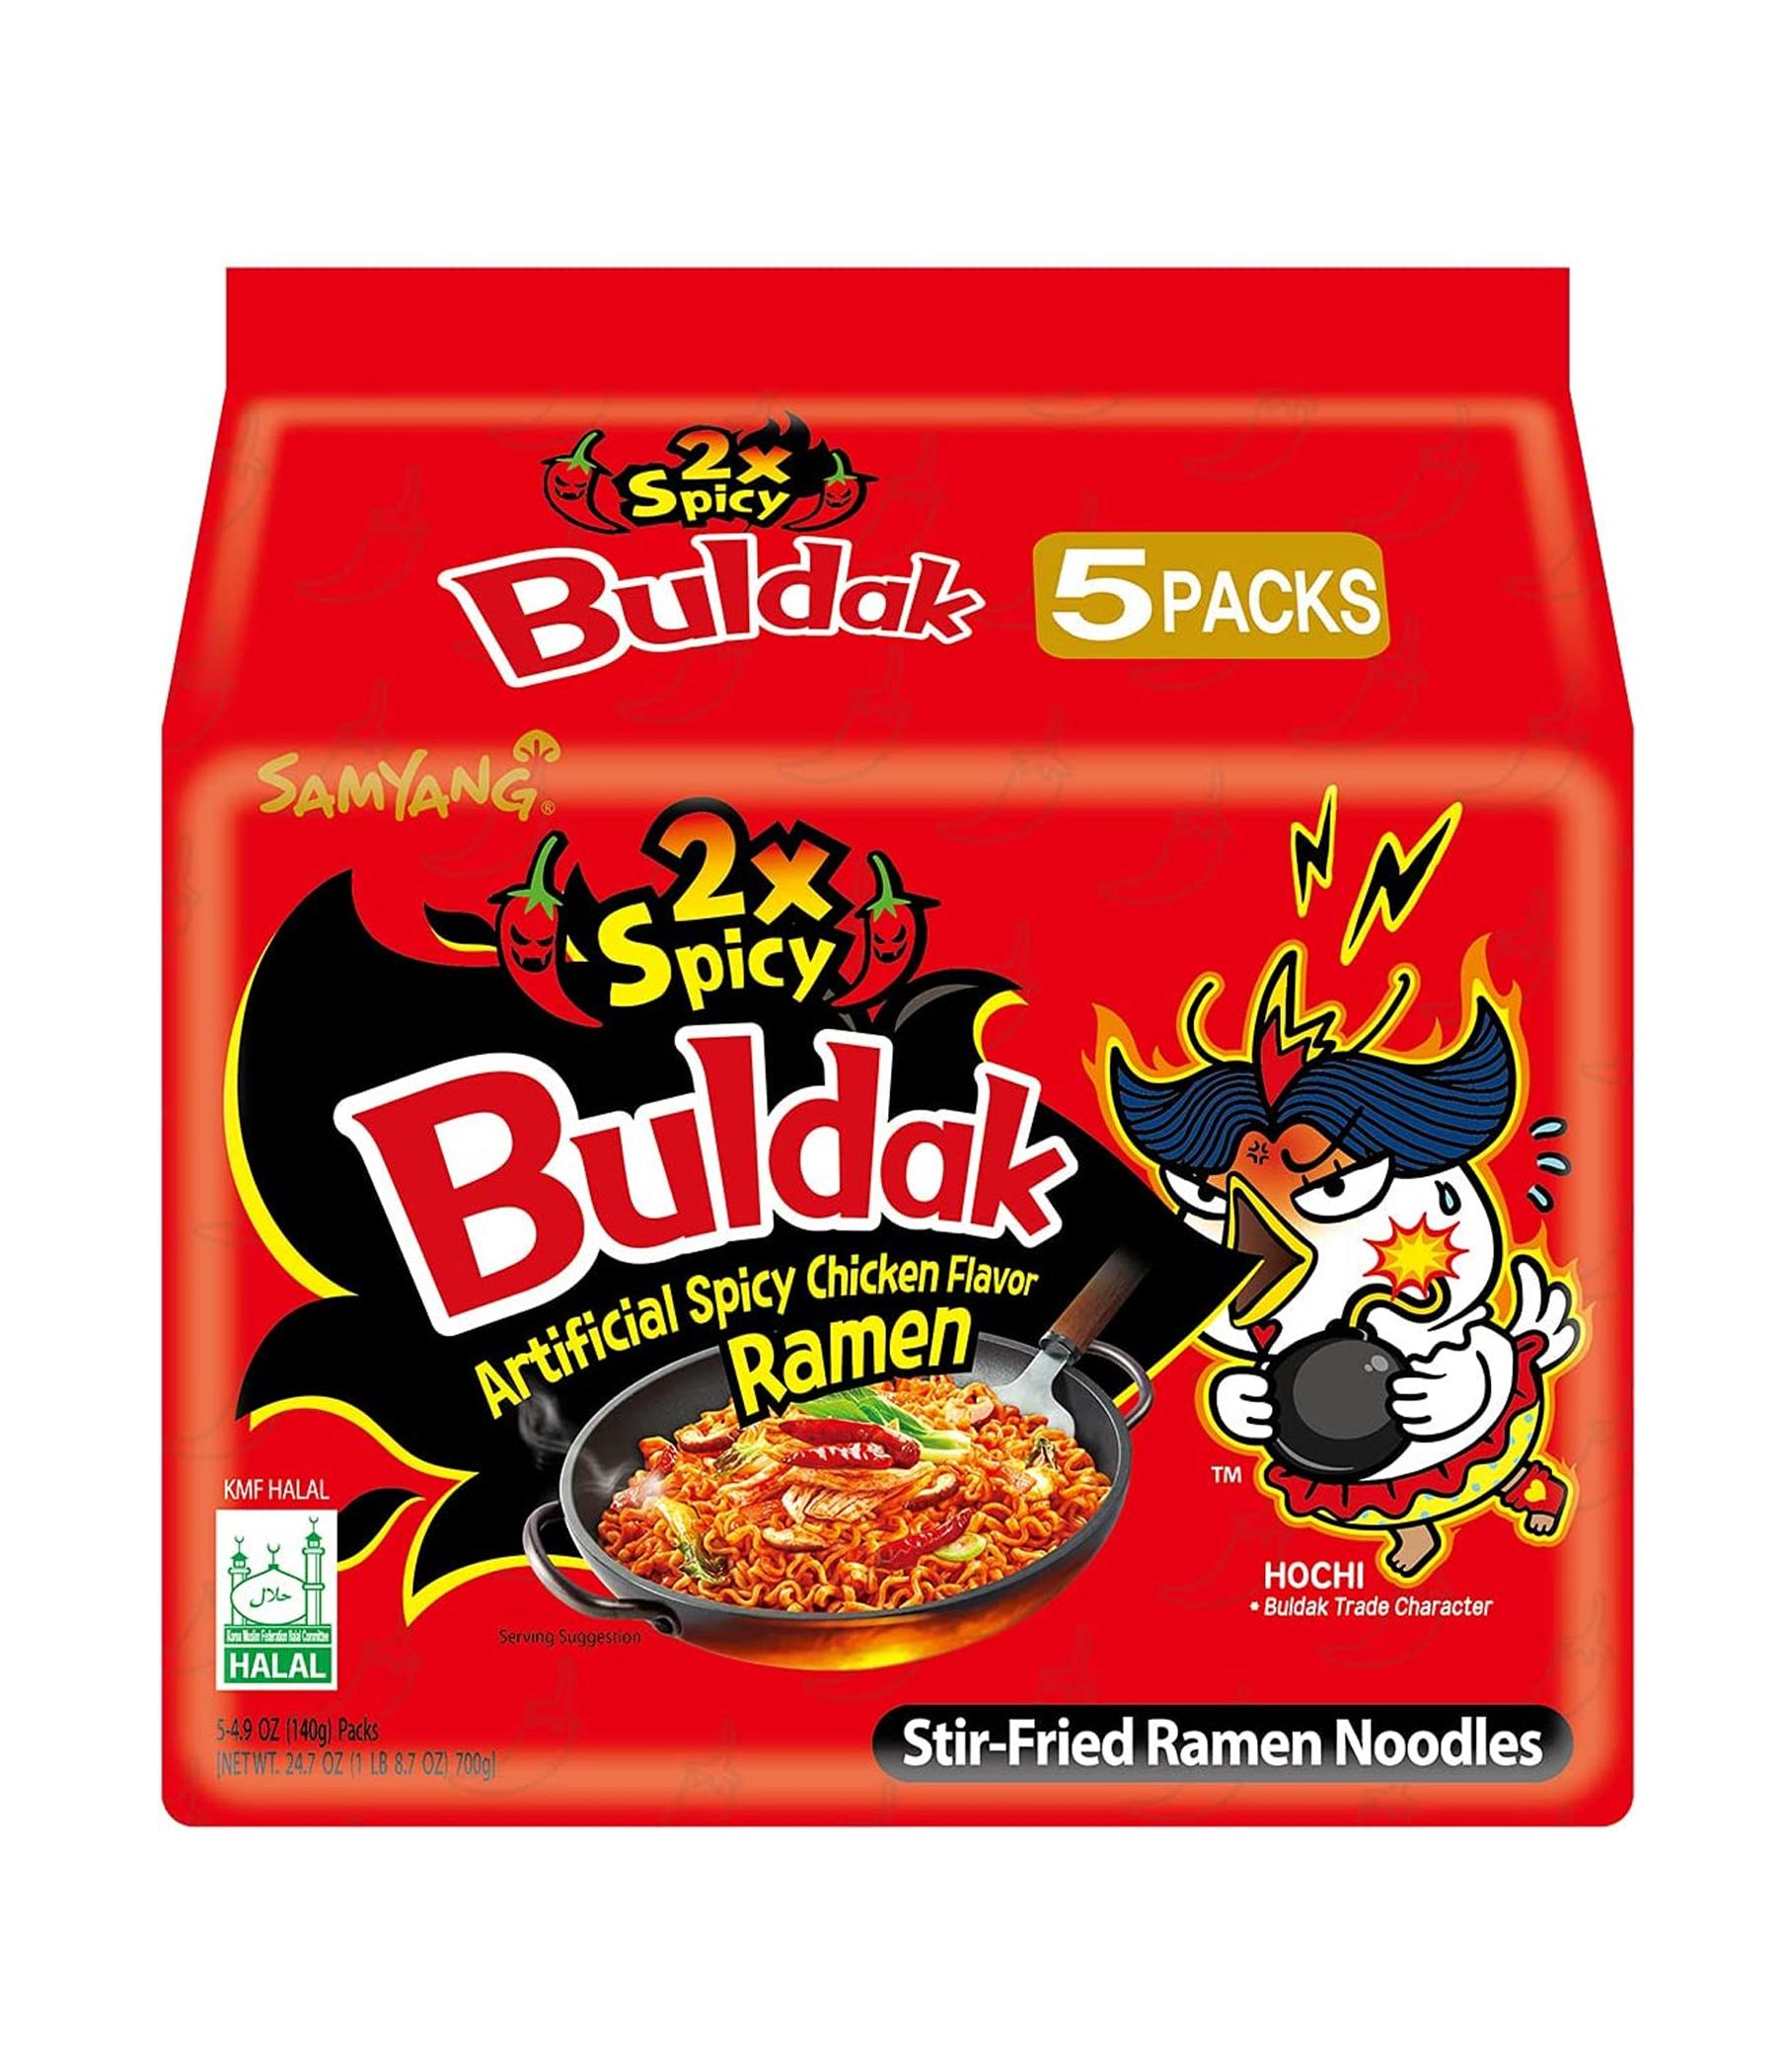 samyang-buldak-2x-stir-fried-ramen-artificial-spicy-chicken-flavor